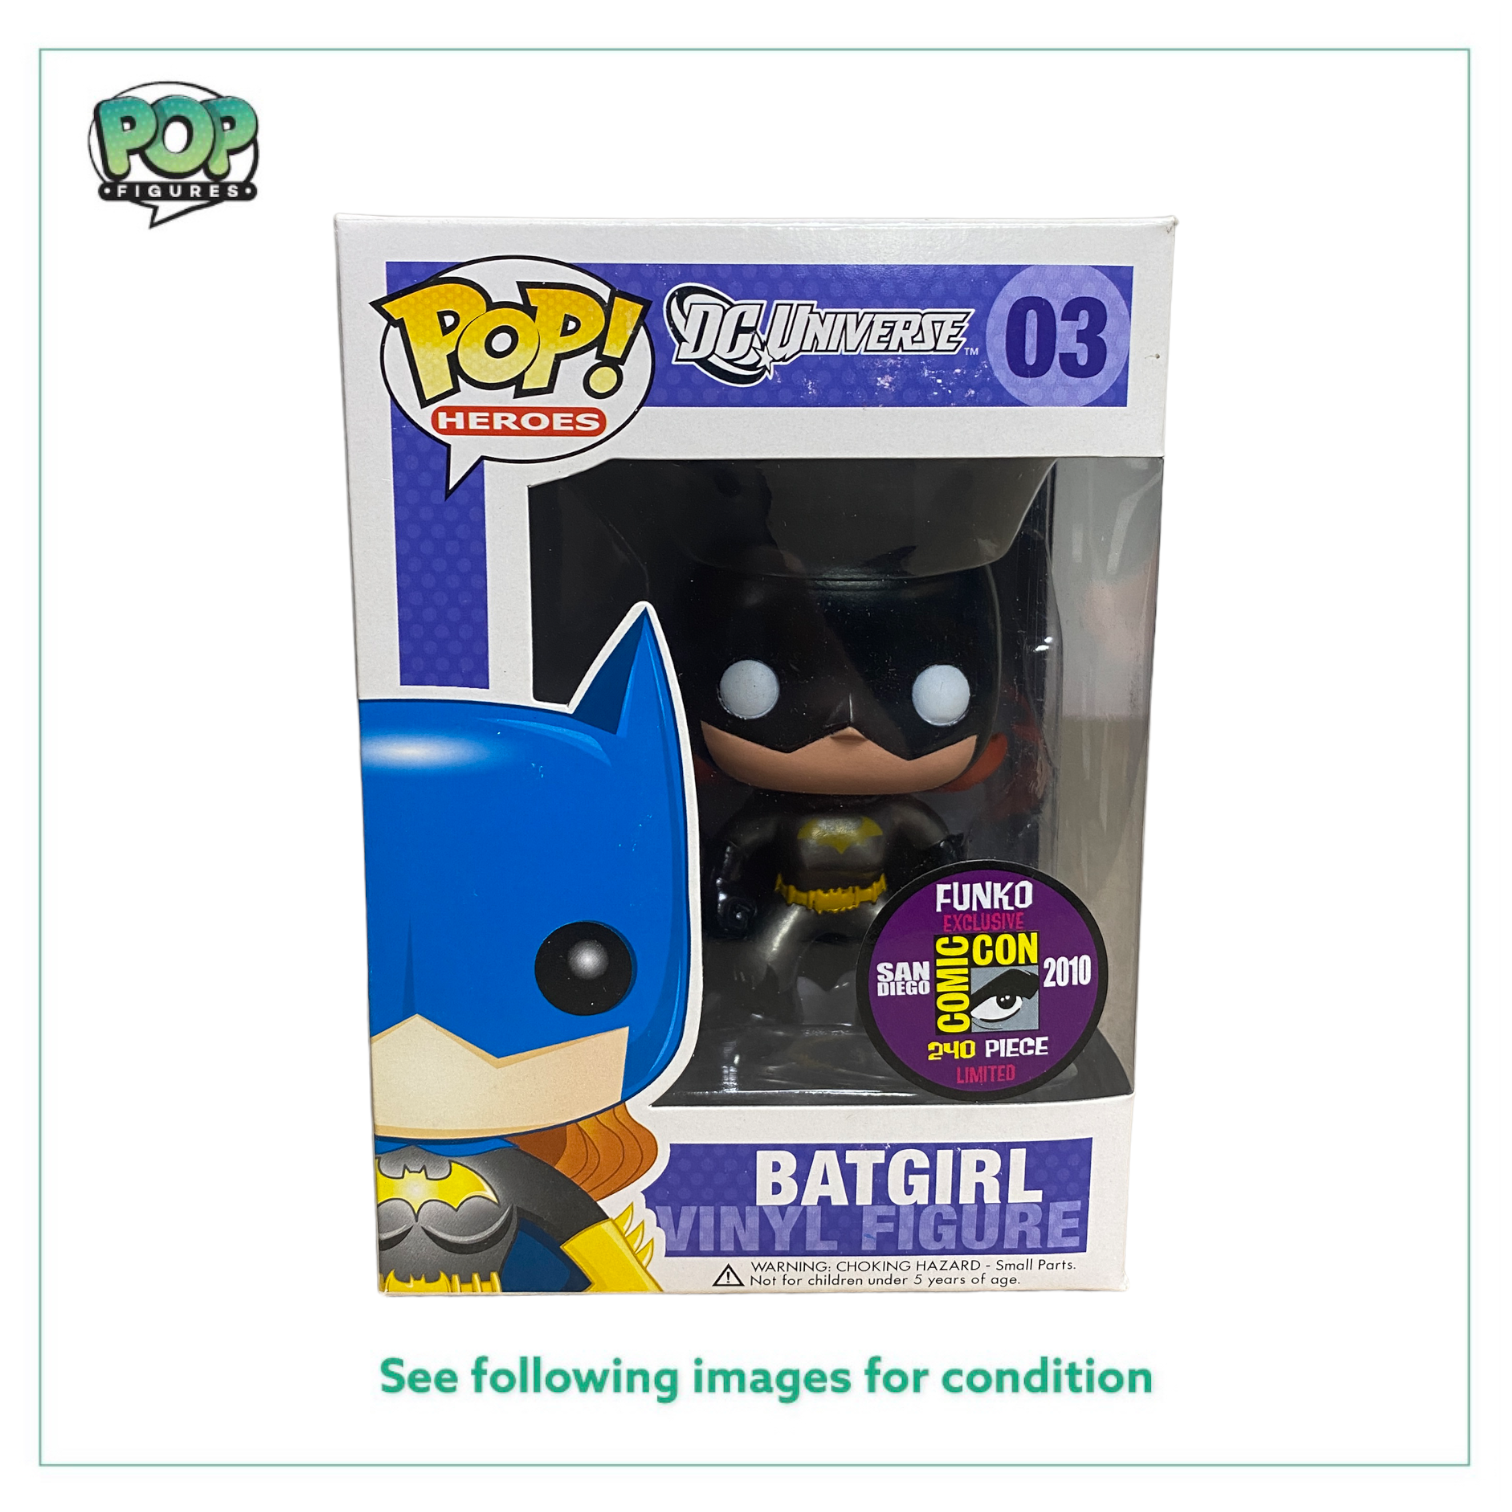 Batgirl #03 (Metallic) Funko Pop! - DC Universe - SDCC 2010 Exclusive LE240 Pcs -  Condition 7.5/10